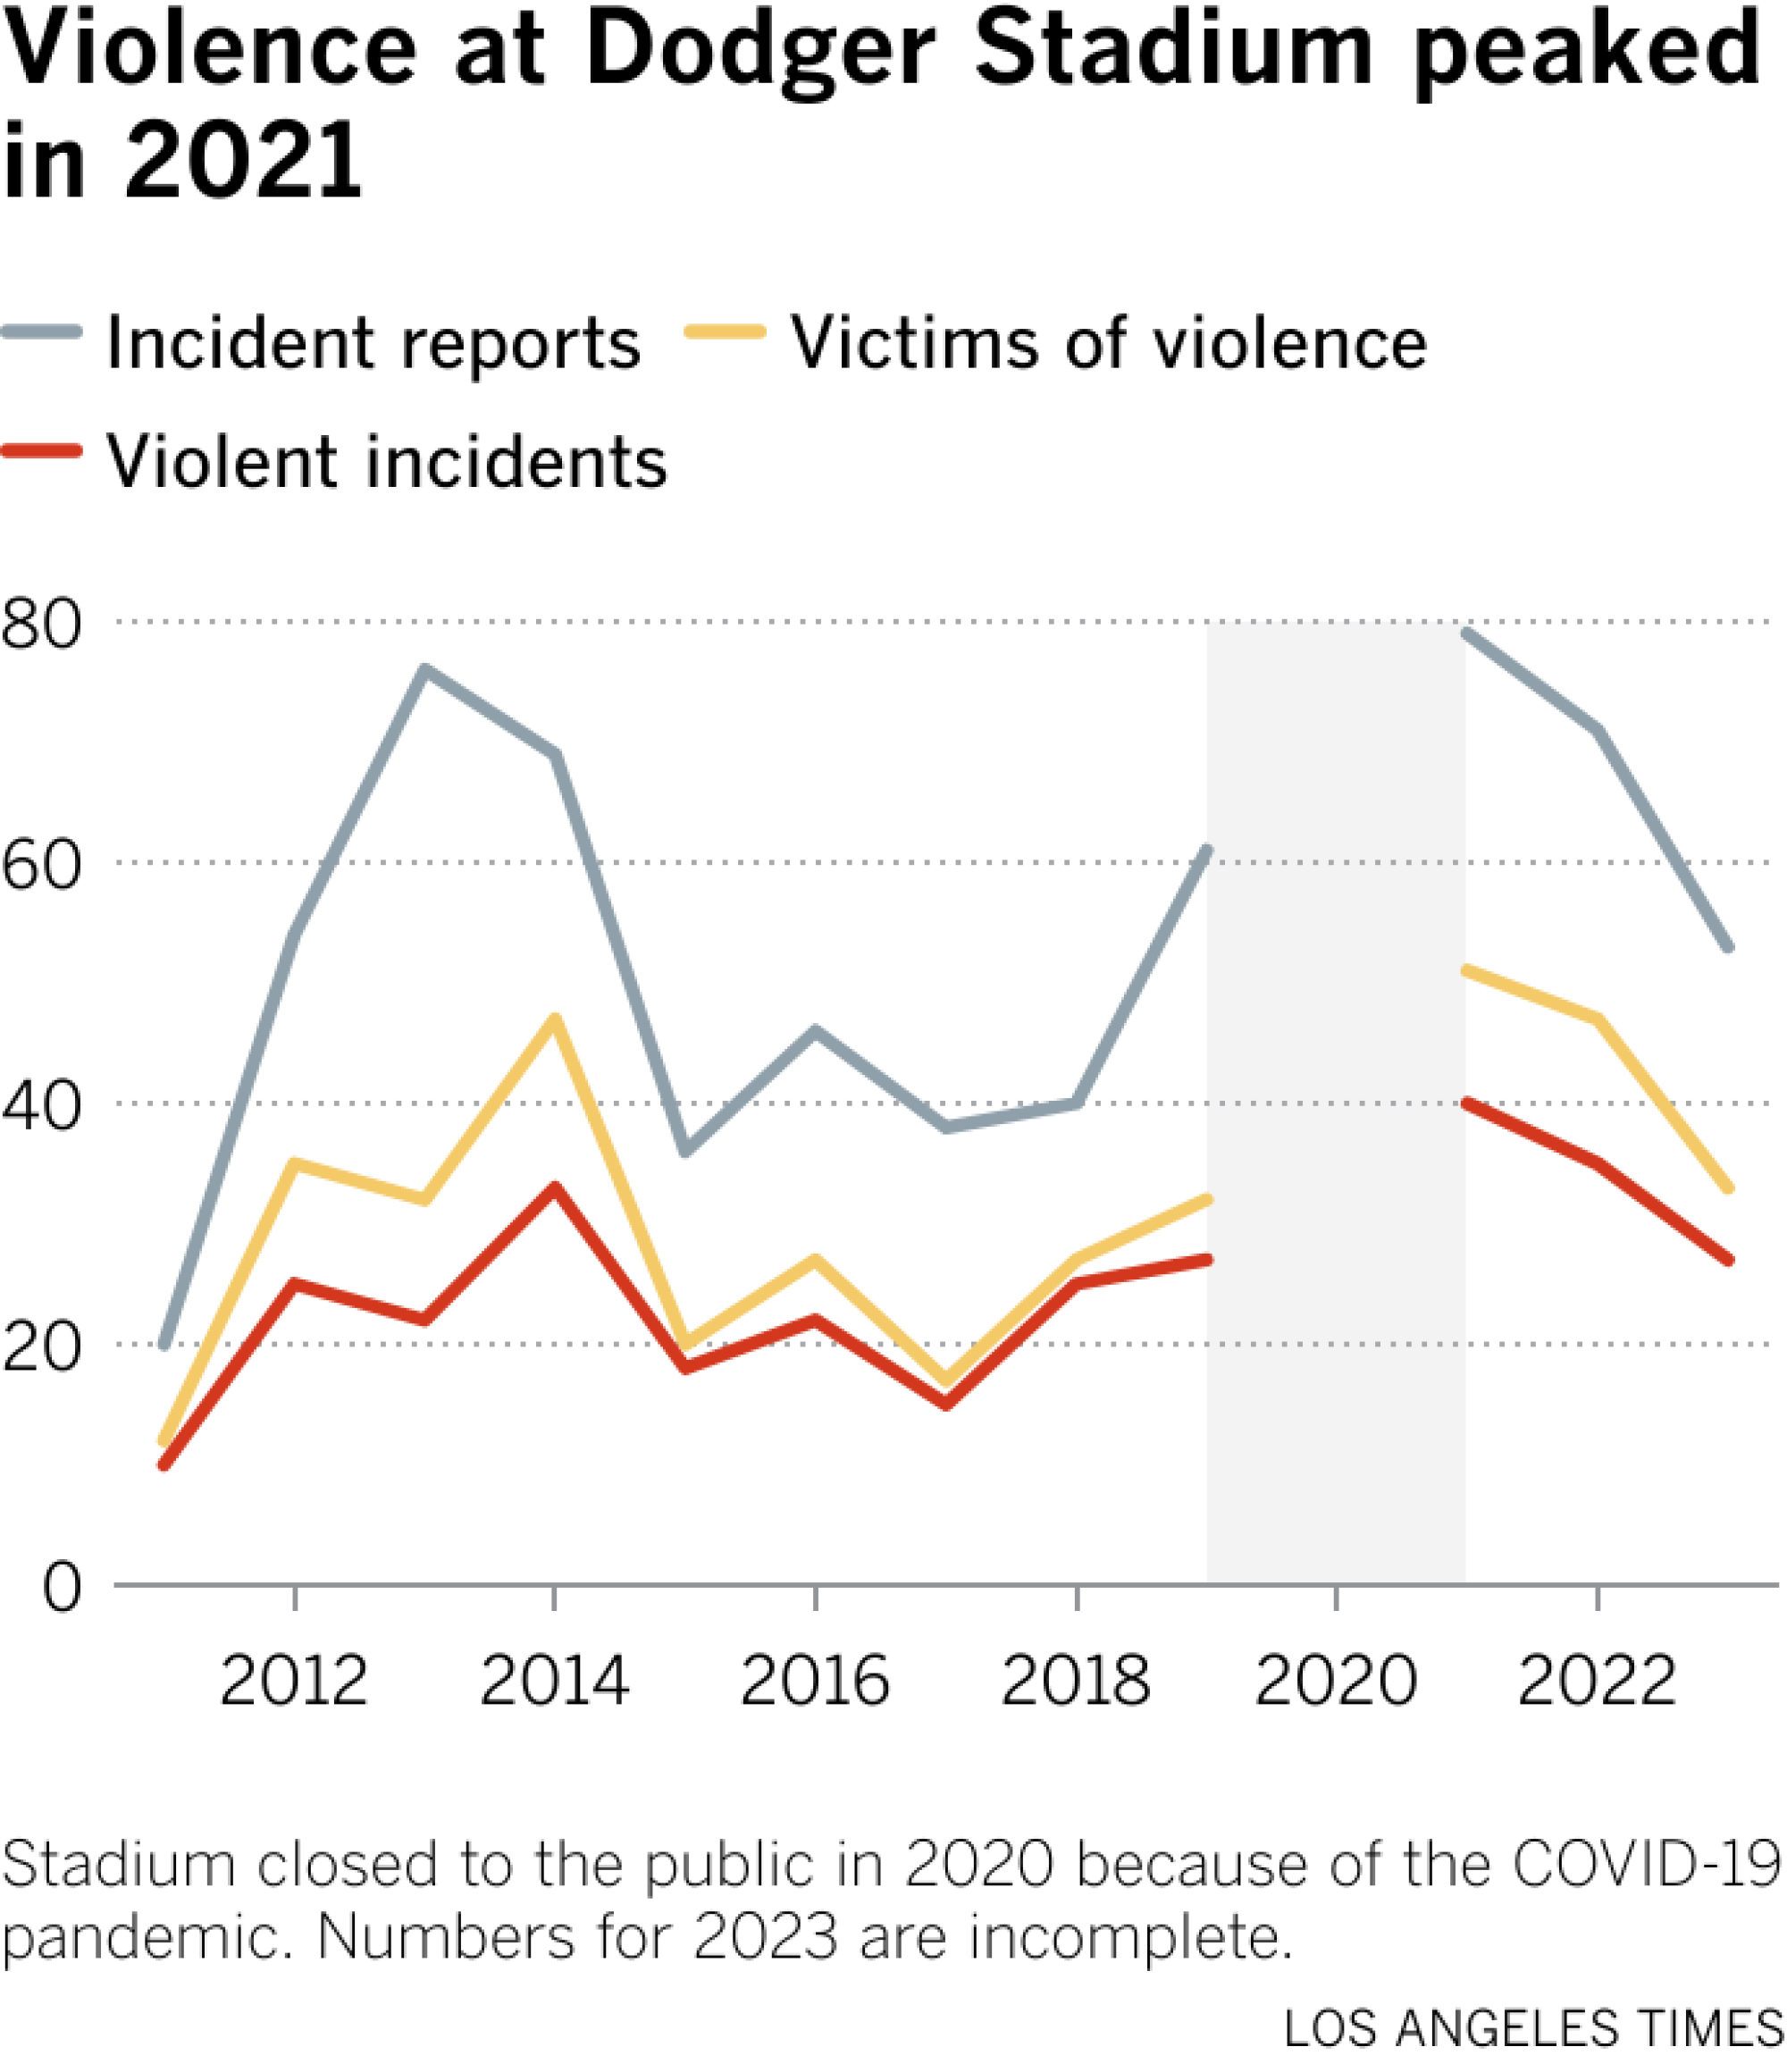 O gráfico de linhas rastreia relatórios de crimes, incidentes violentos e incidentes de violência no Doger Stadium entre 2011 e 2022. Os relatórios de crimes aumentaram em 2013 e em 2021.